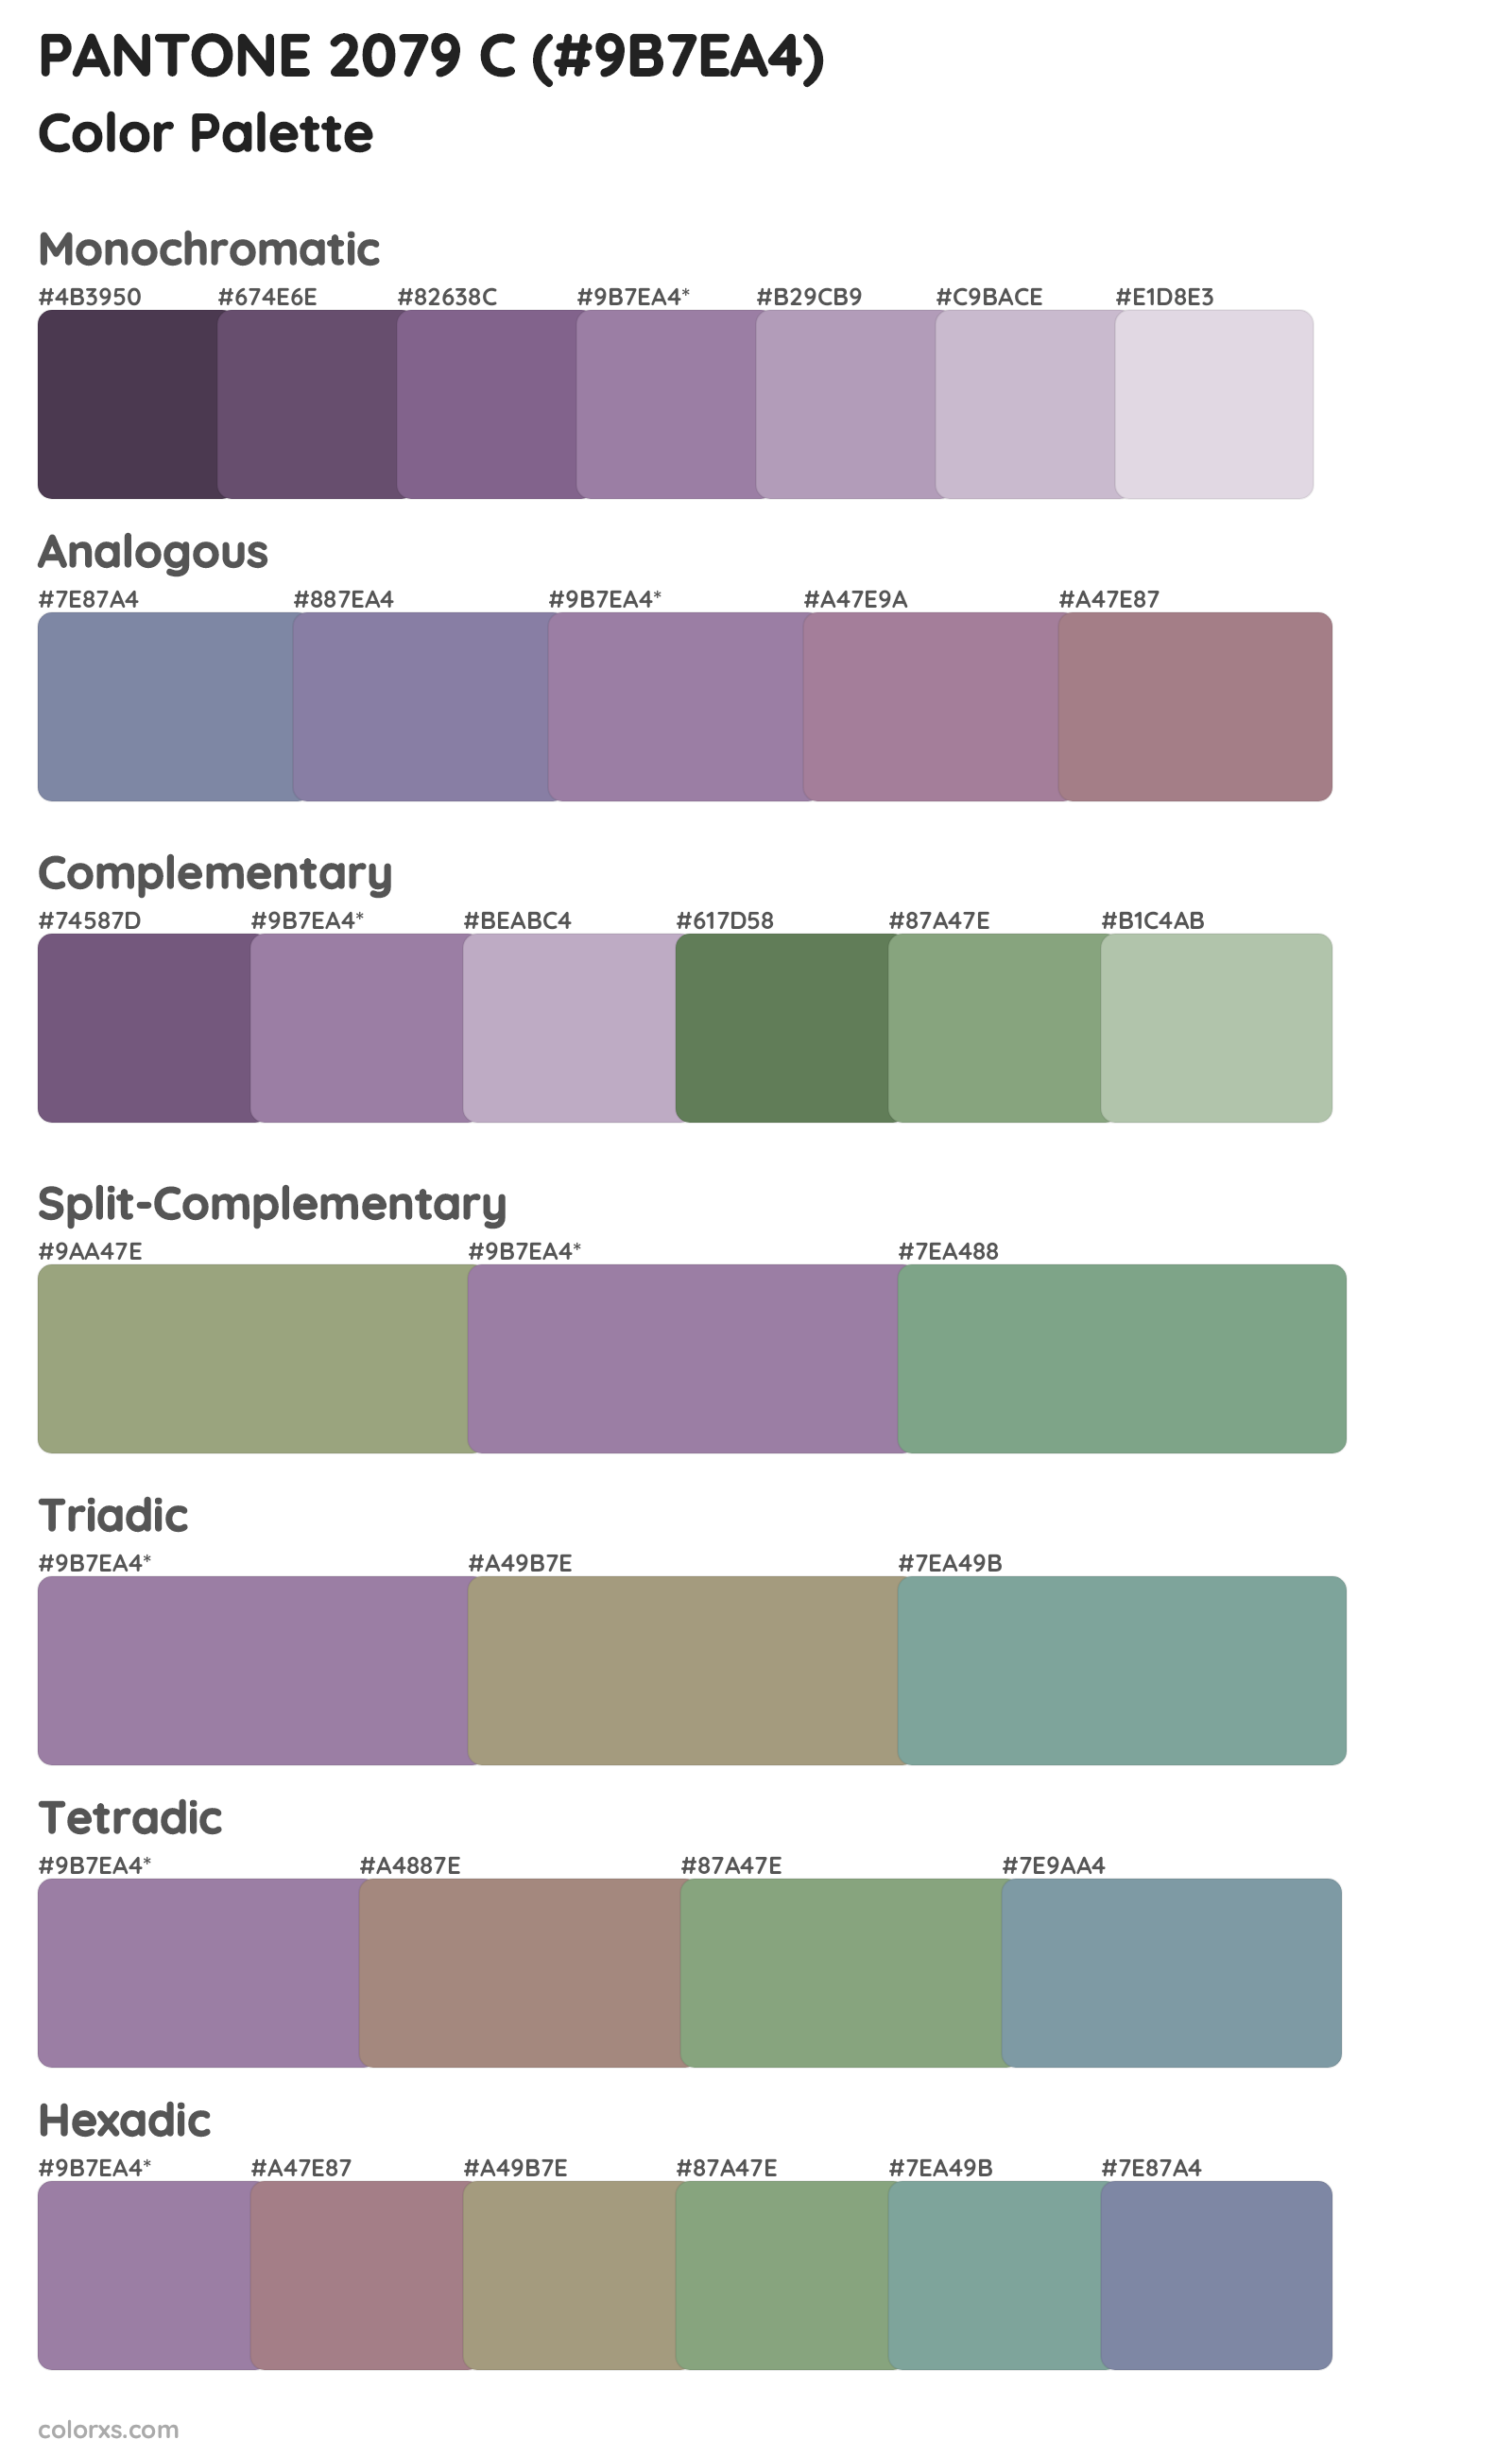 PANTONE 2079 C Color Scheme Palettes